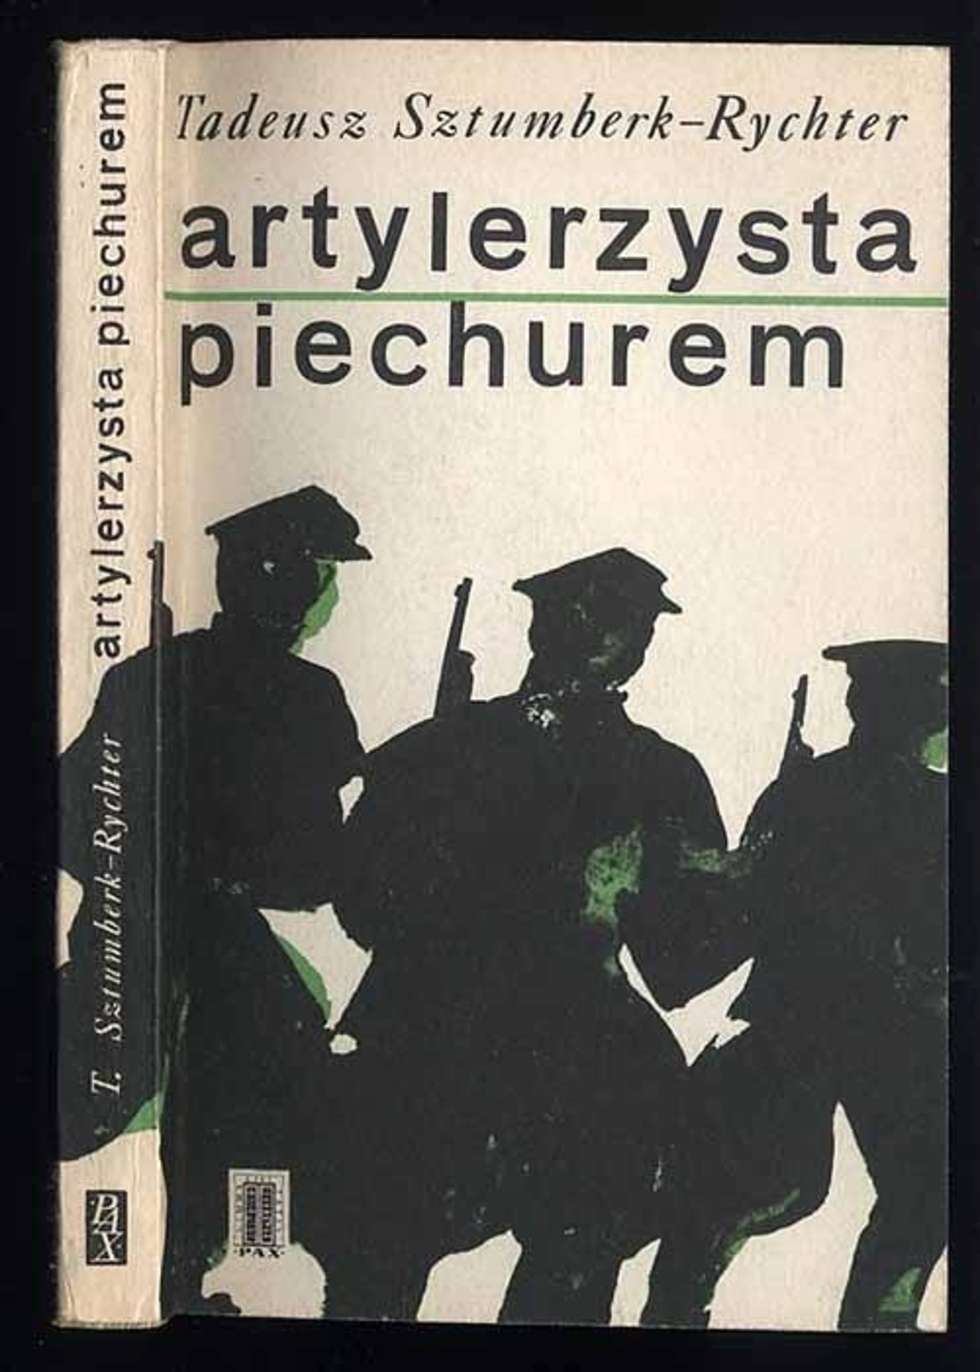  <p>Okładka popularnej książki Tadeusza Sztumberk-Rychtera, &bdquo;Artlerzysta piechurem&rdquo;, jaka miała wiele wydań</p>